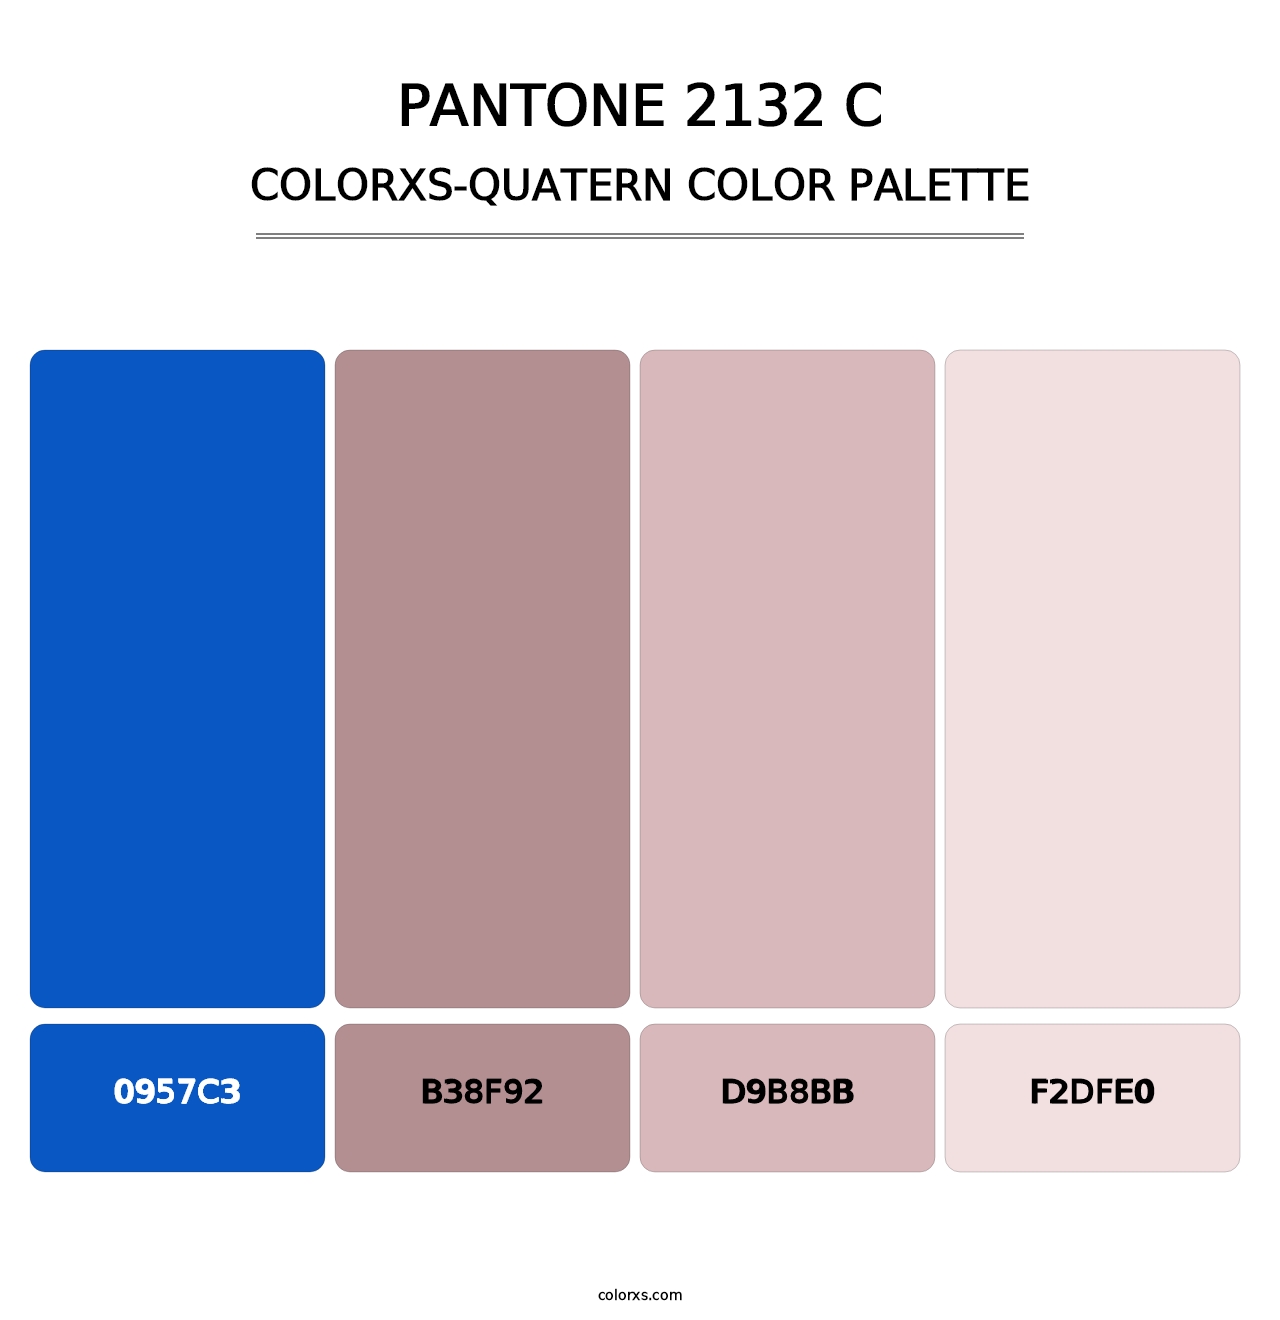 PANTONE 2132 C - Colorxs Quatern Palette